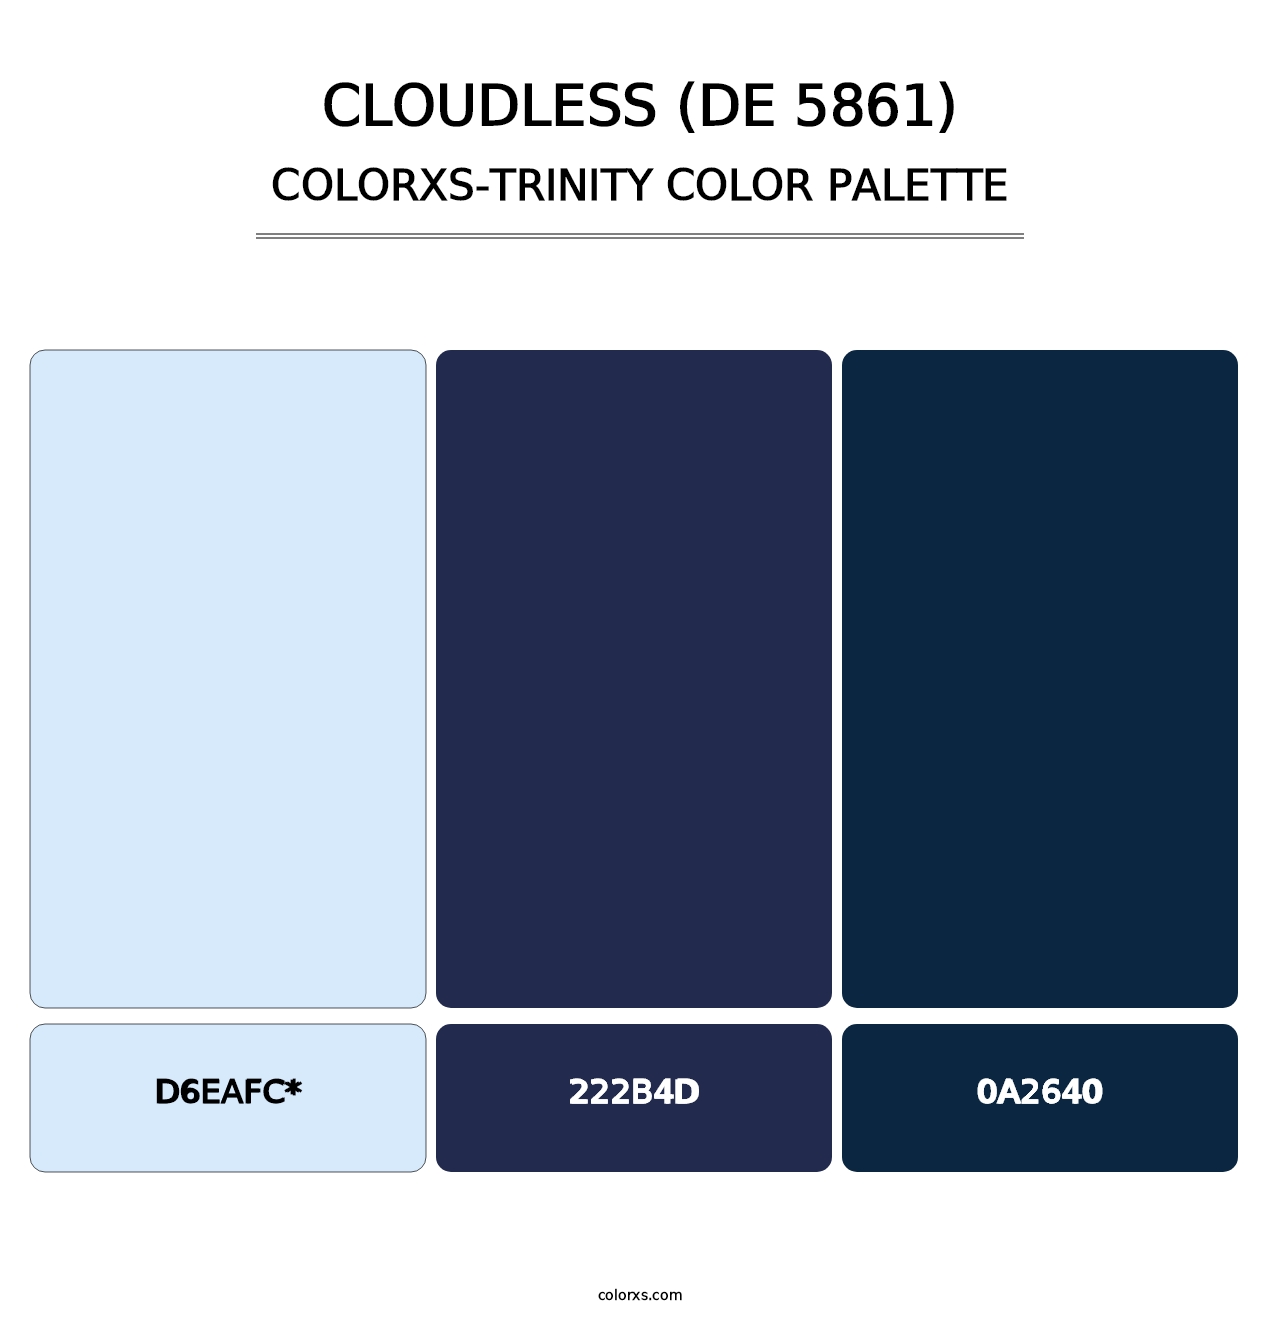 Cloudless (DE 5861) - Colorxs Trinity Palette